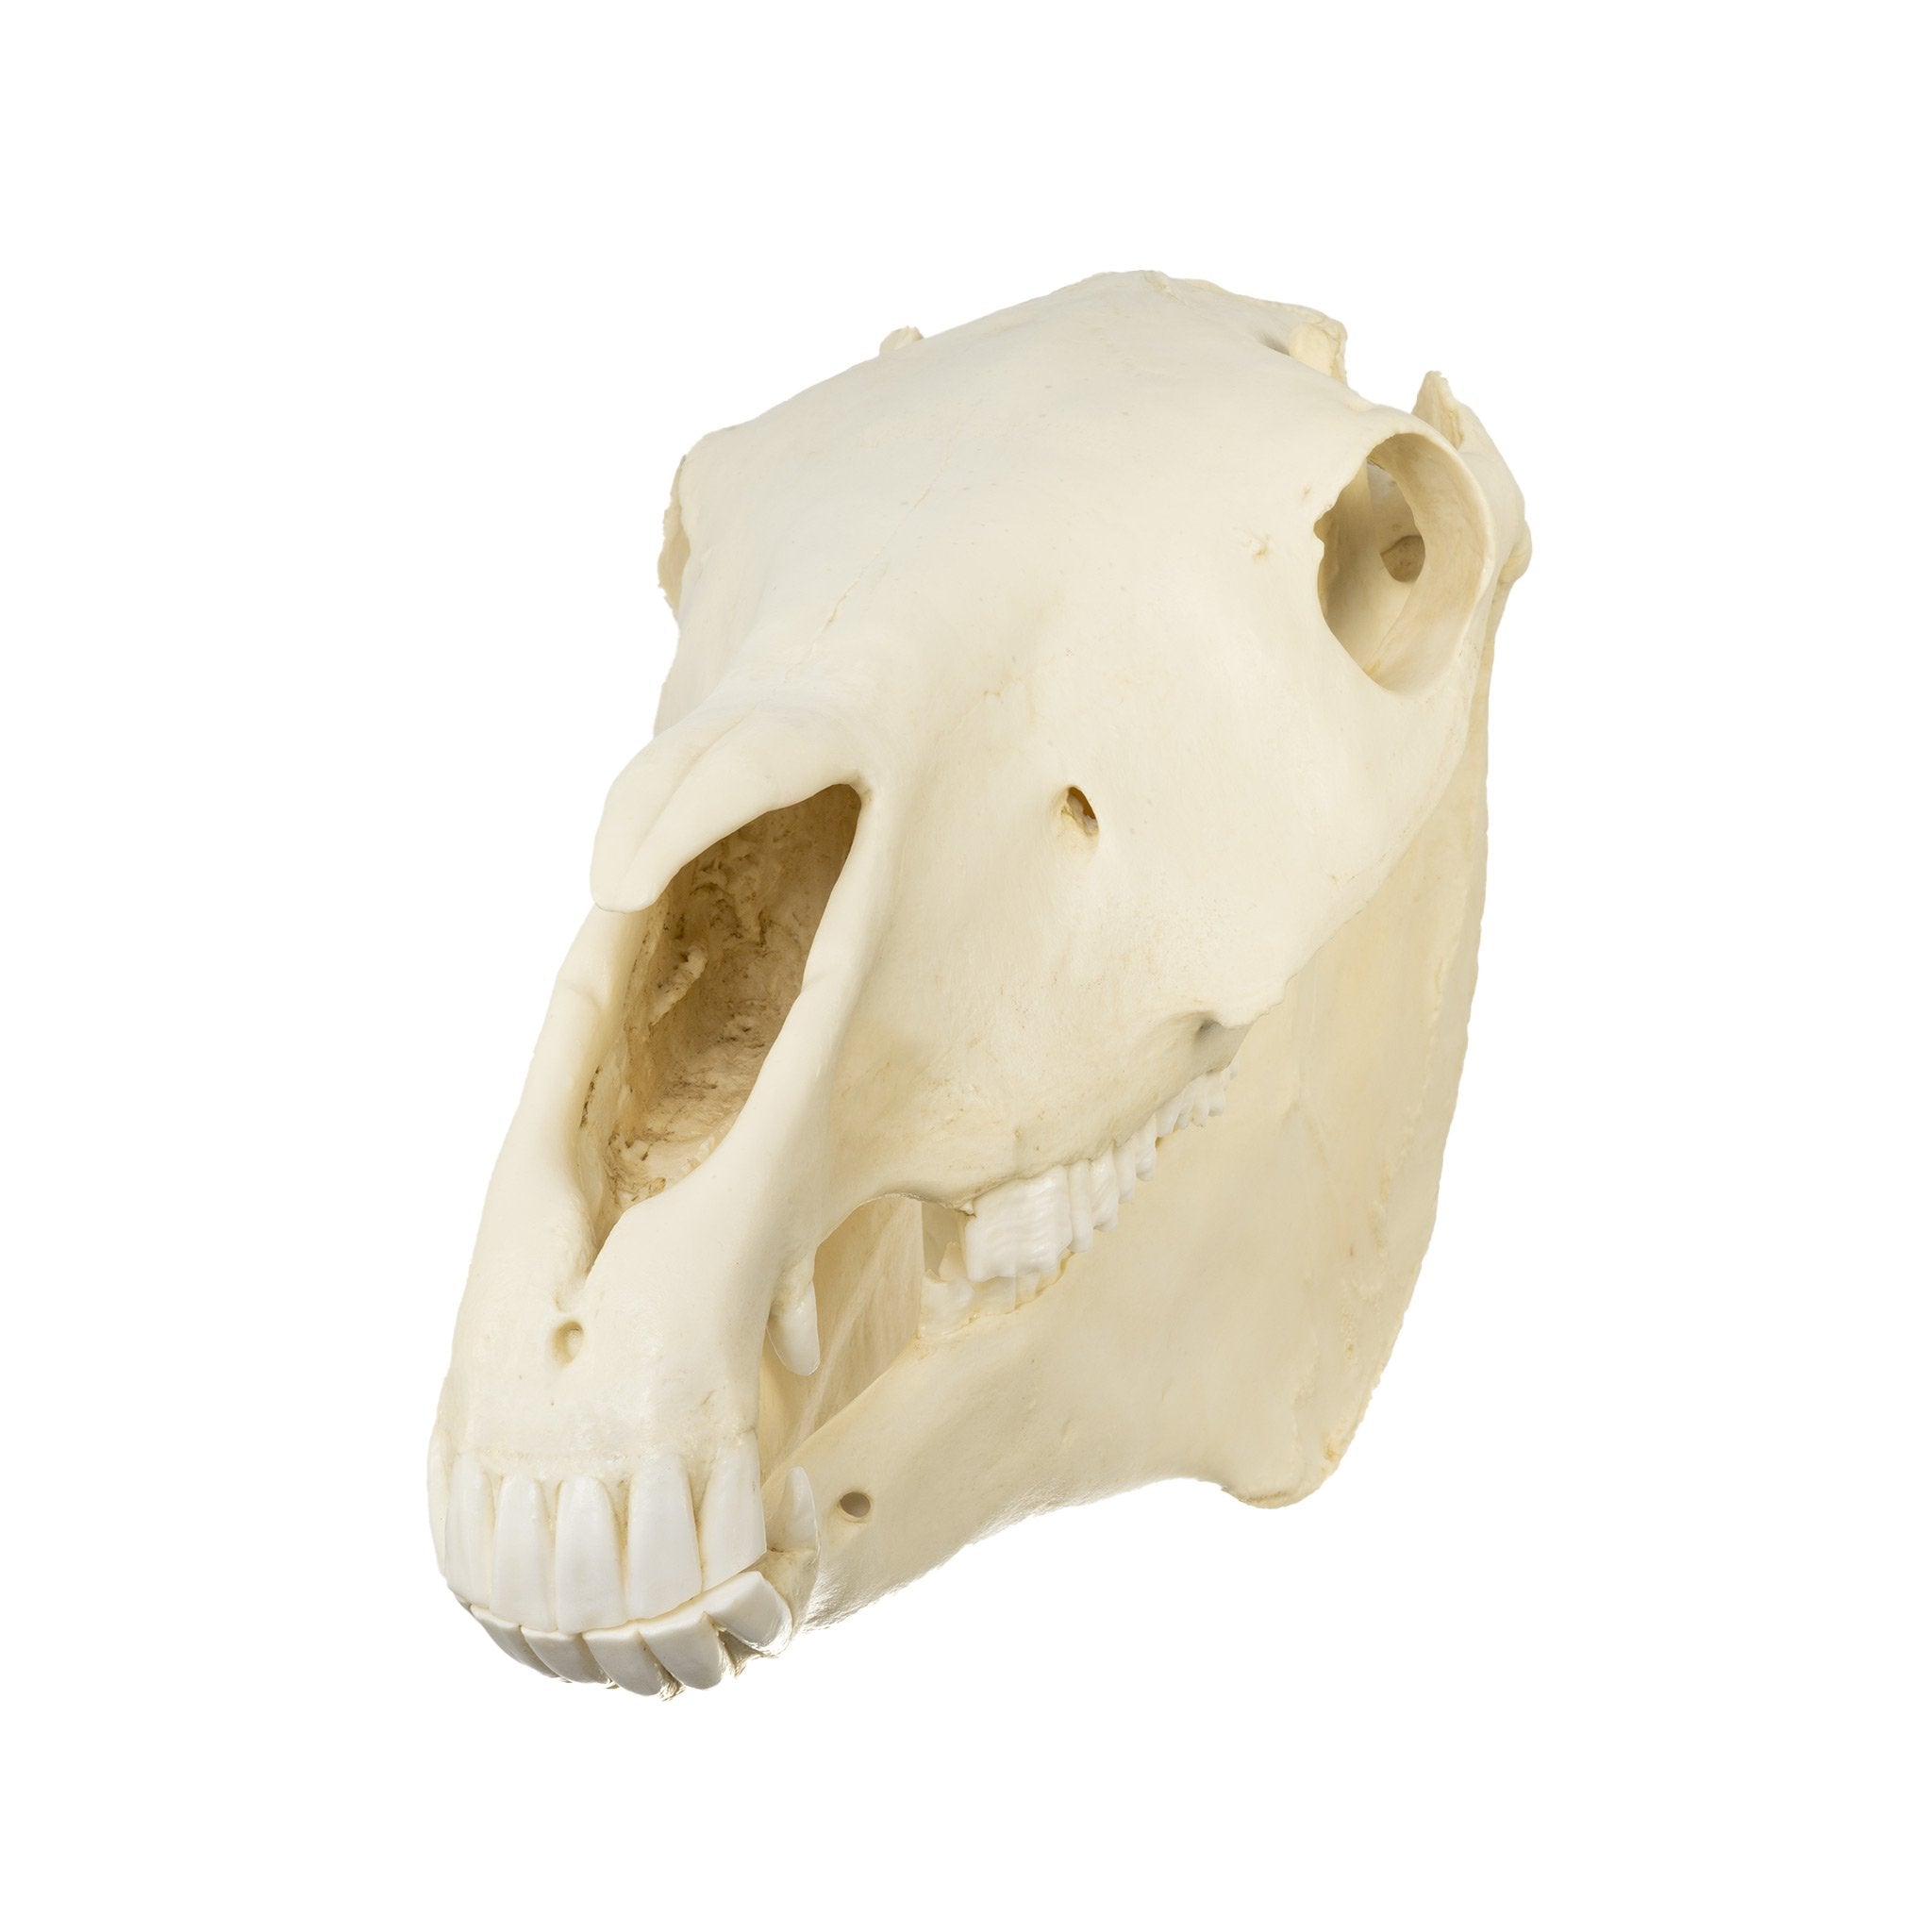 horse skull labeled